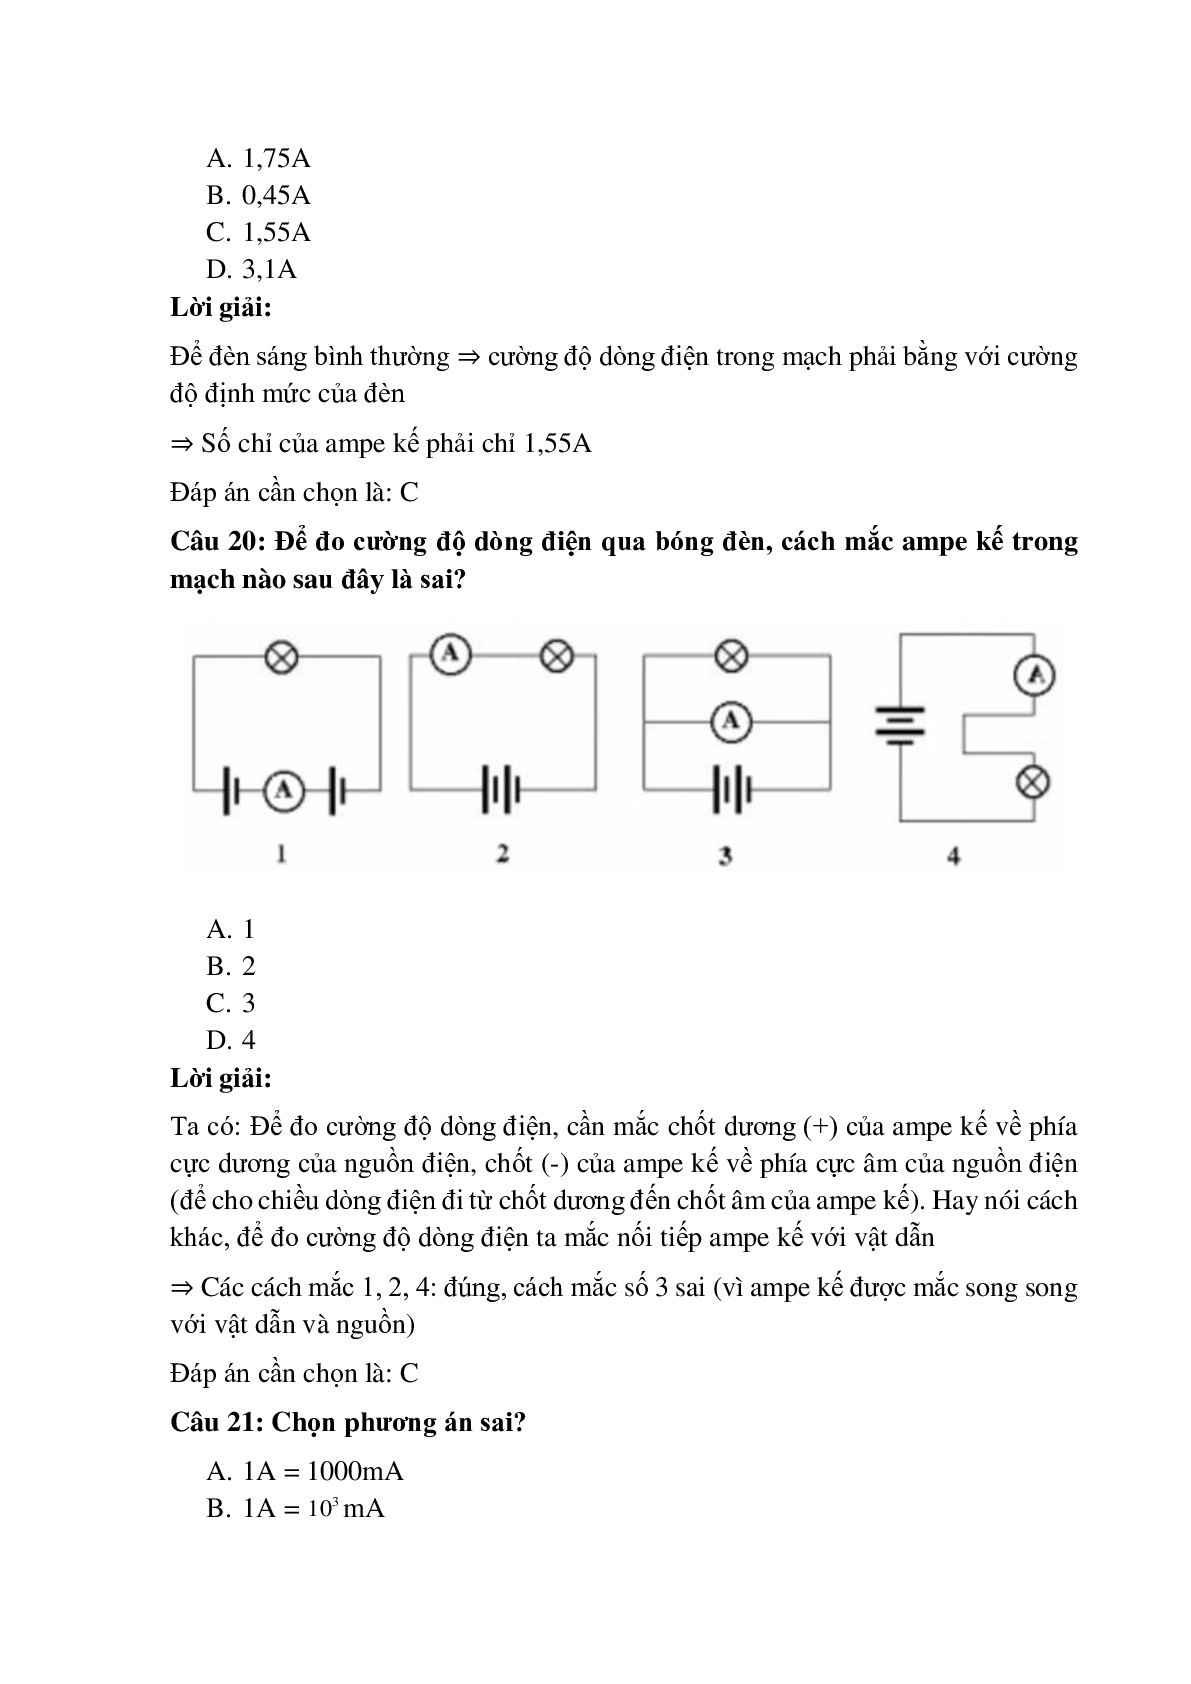 Trắc nghiệm Cường độ dòng điện có đáp án – Vật lí lớp 7 (trang 8)